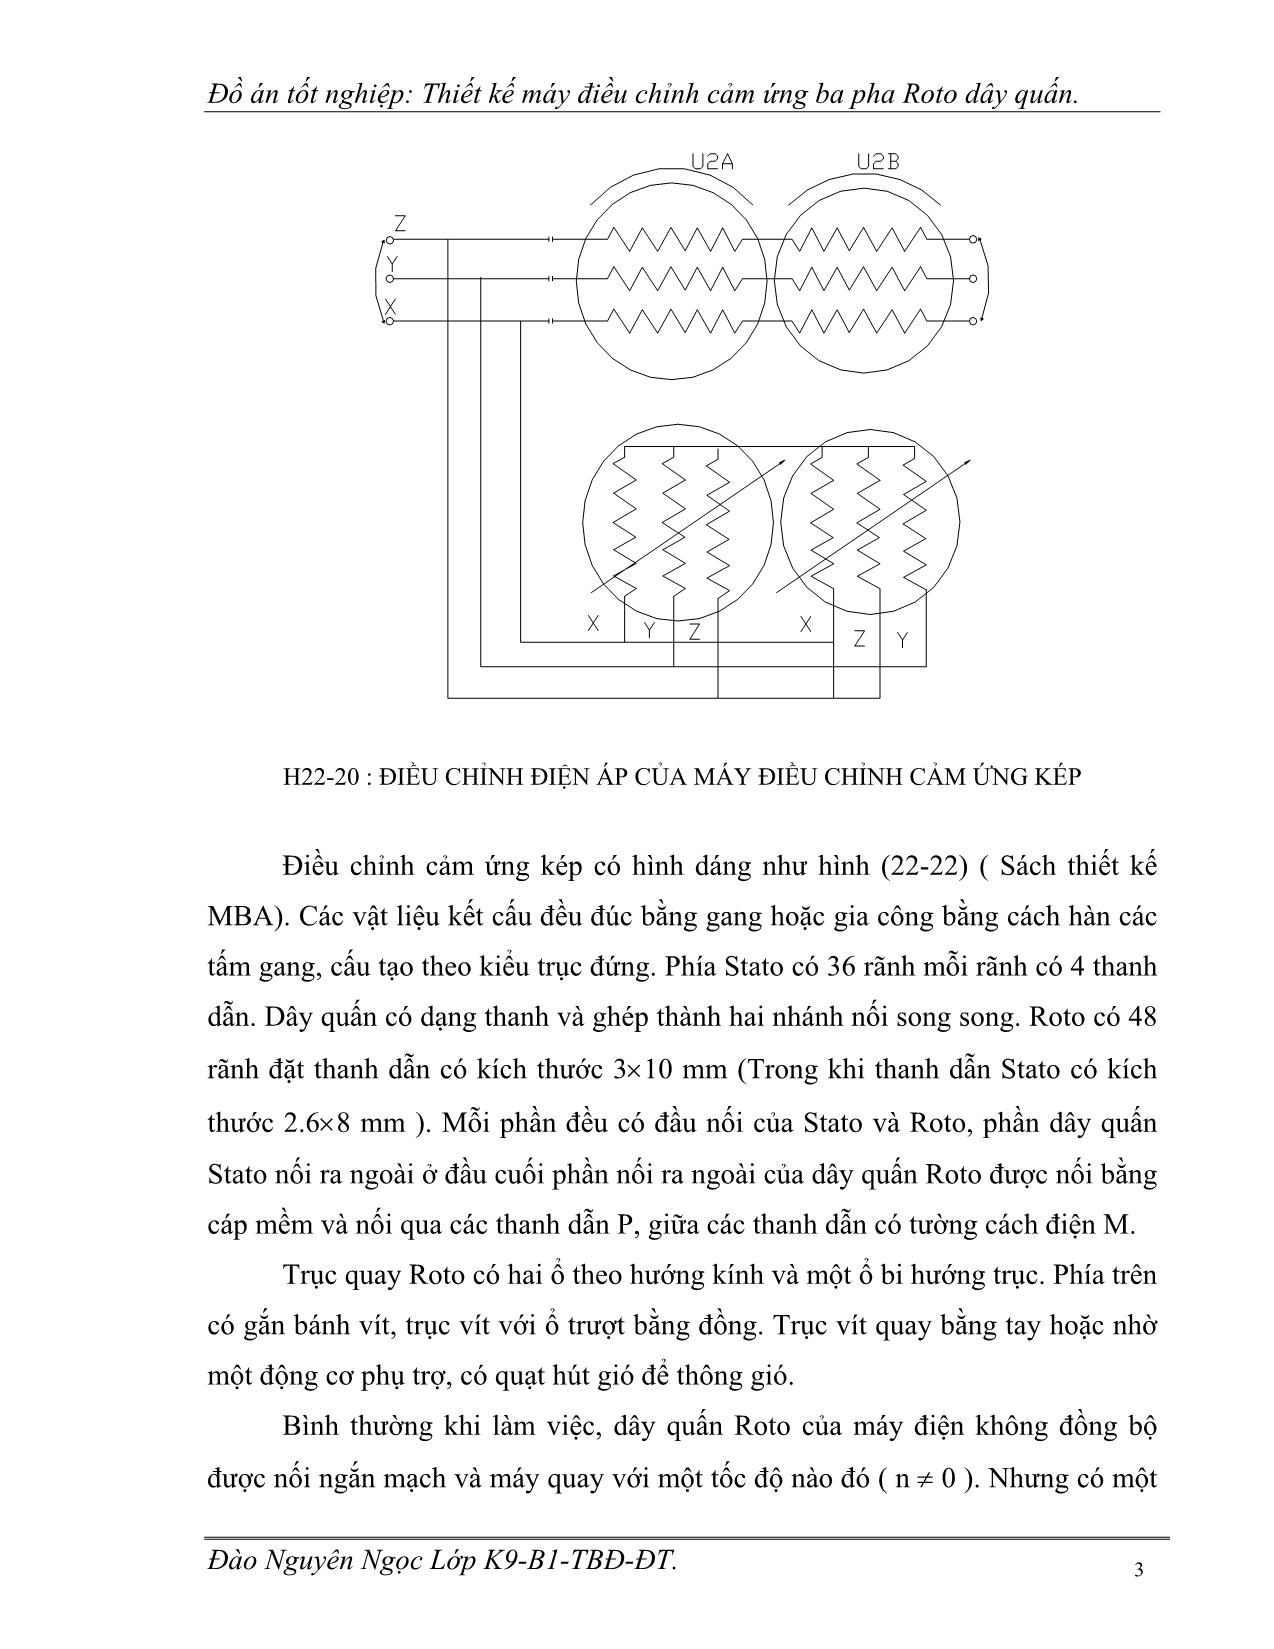 Luận văn Thiết kế máy điều chỉnh cảm ứng ba pha Roto dây quấn trang 5